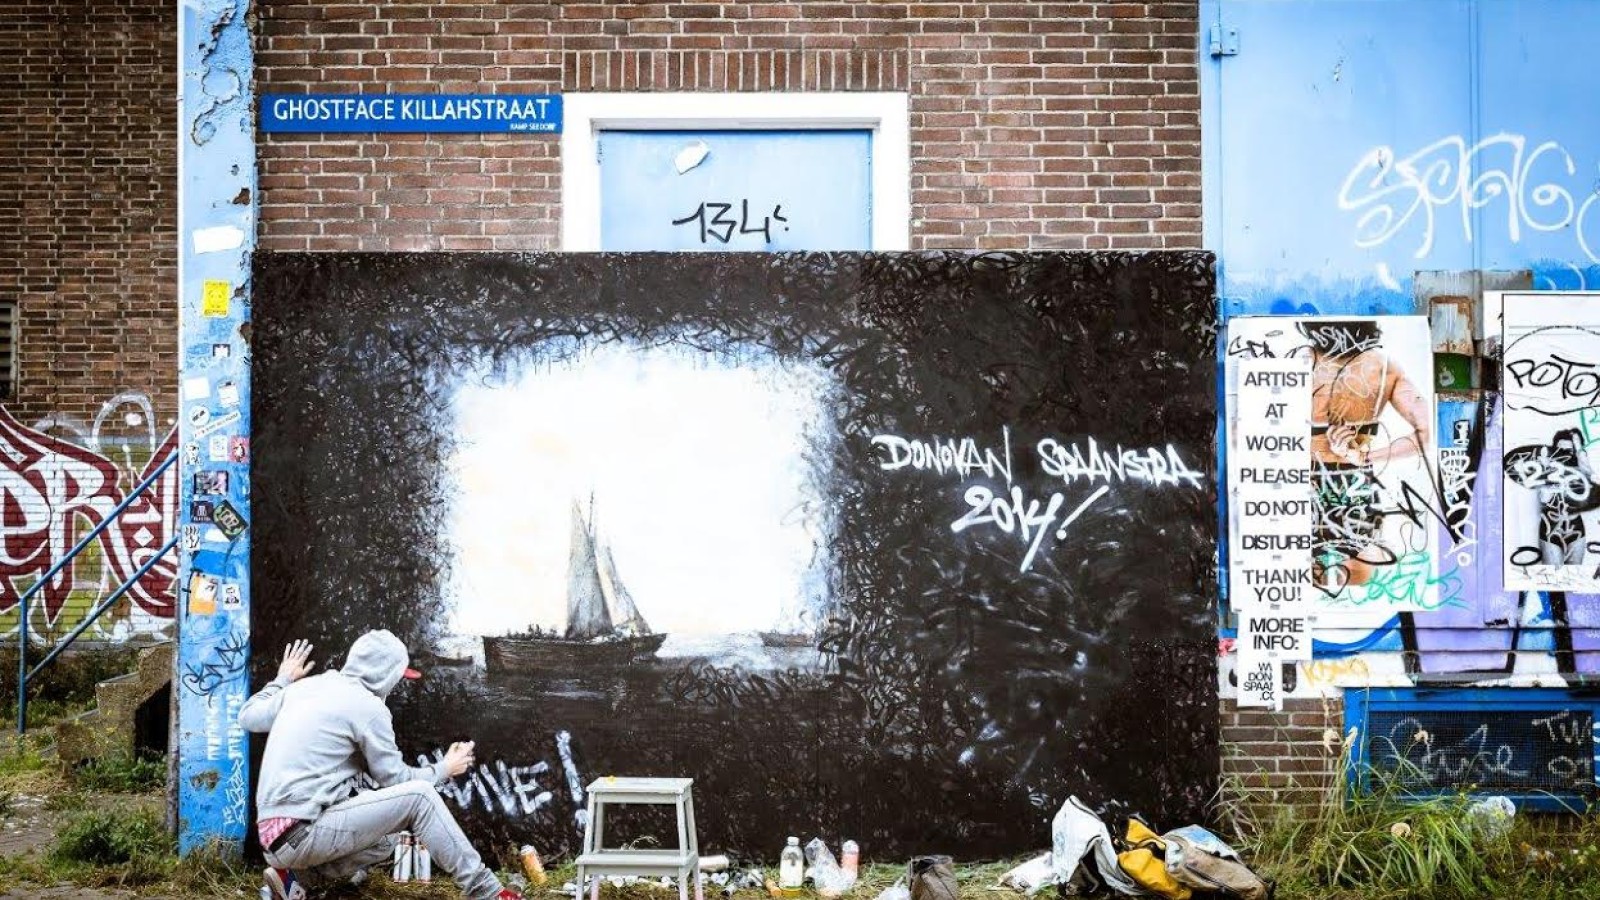 Meesterwerken Rijksmuseum als graffiti door de stad